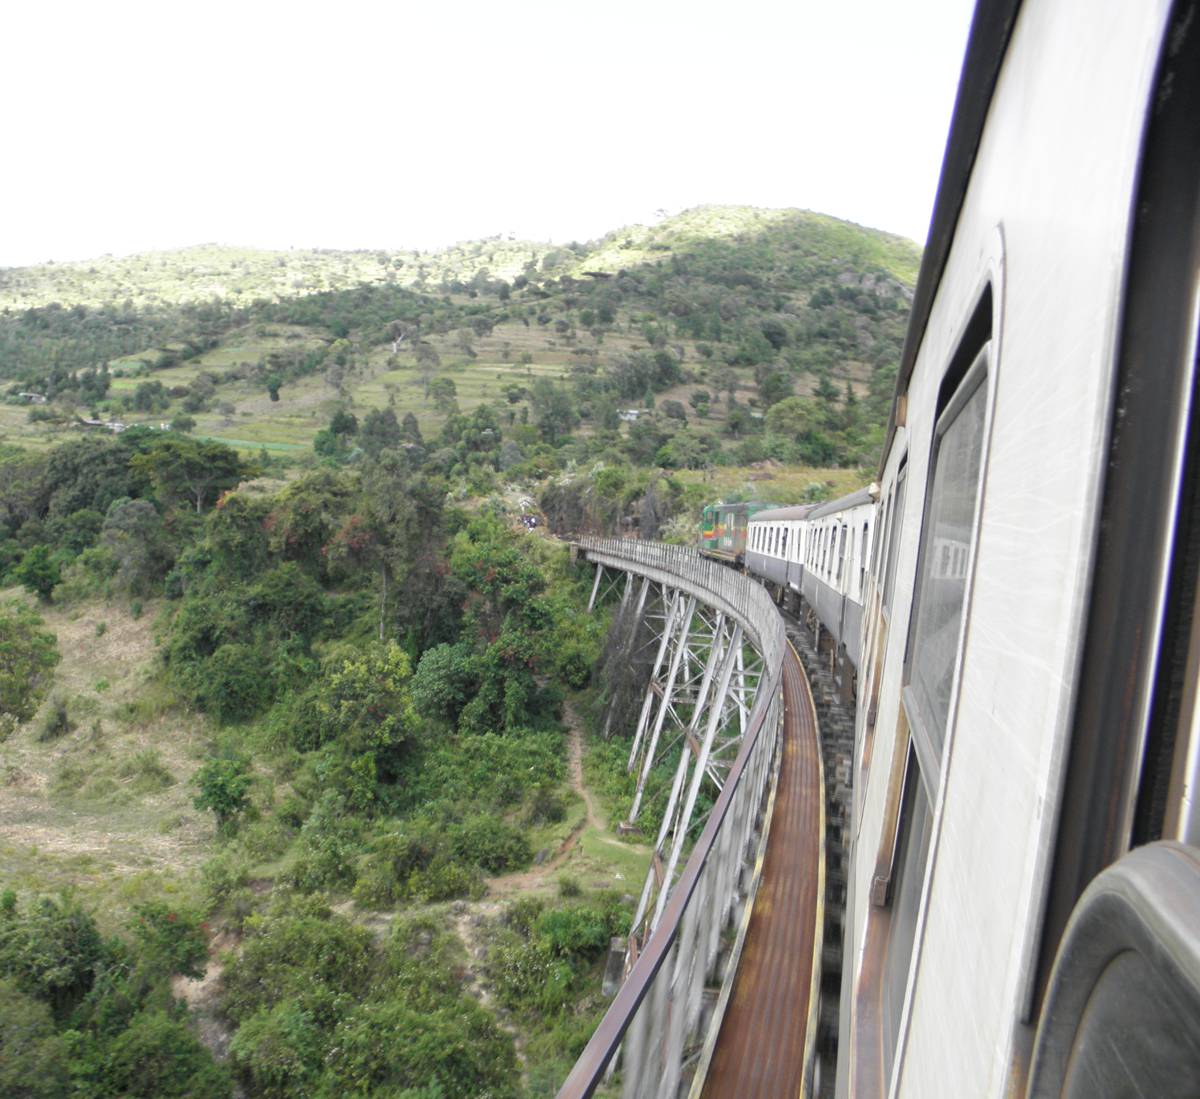 China funding Uganda's Kampala to Malaba rail network project